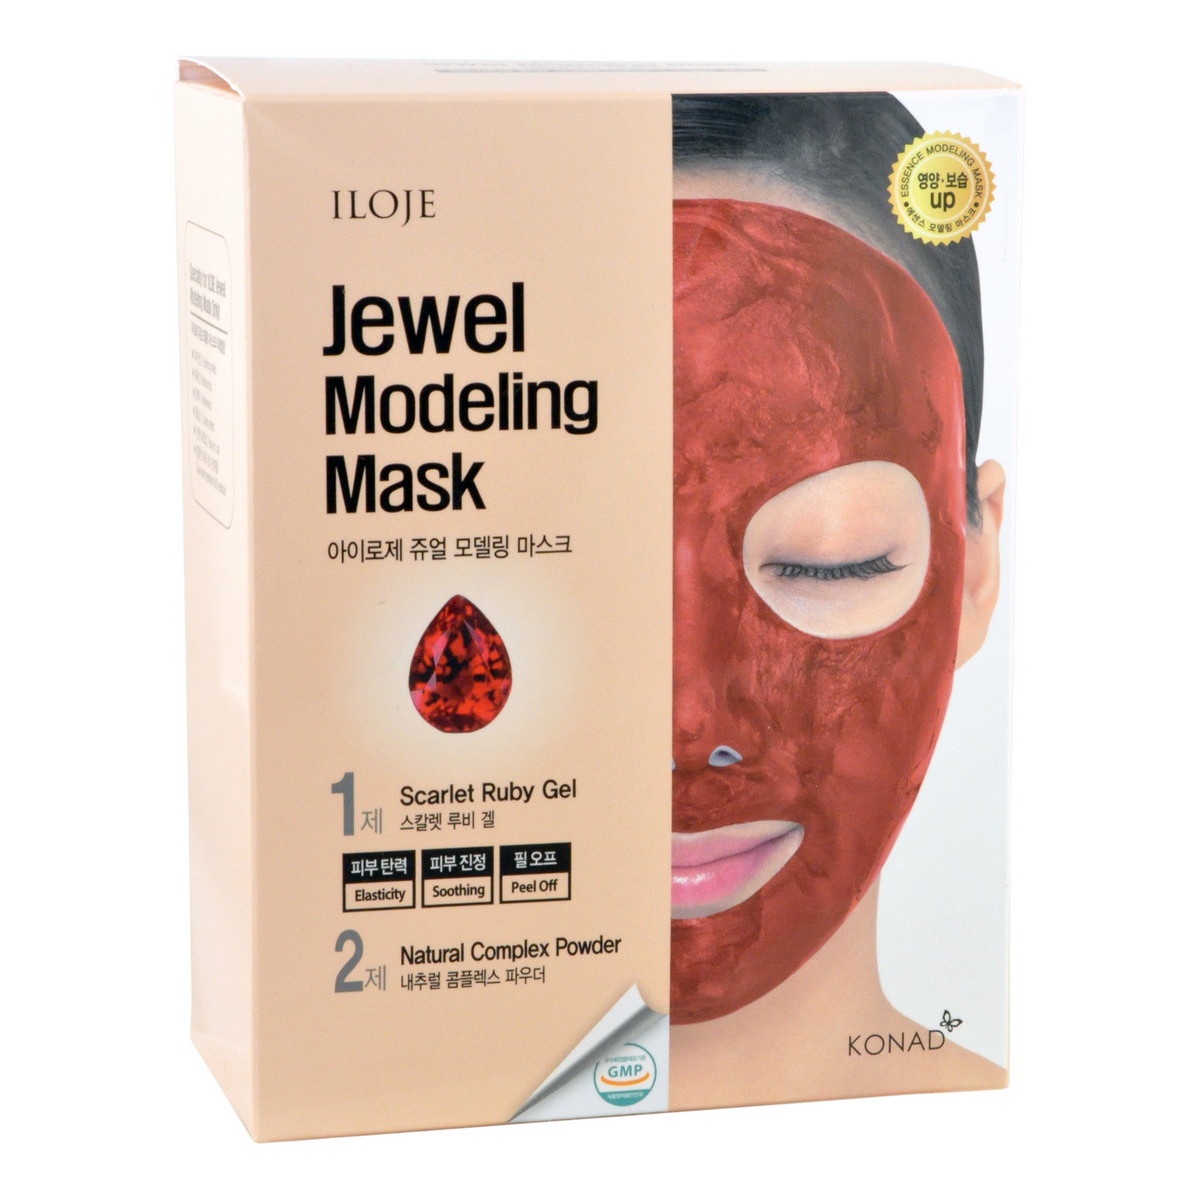 Маска косметическая Konad / Моделирующая маска для лица с рубиновой пудрой, арт. 726615, 50 g*5, 5 g*5